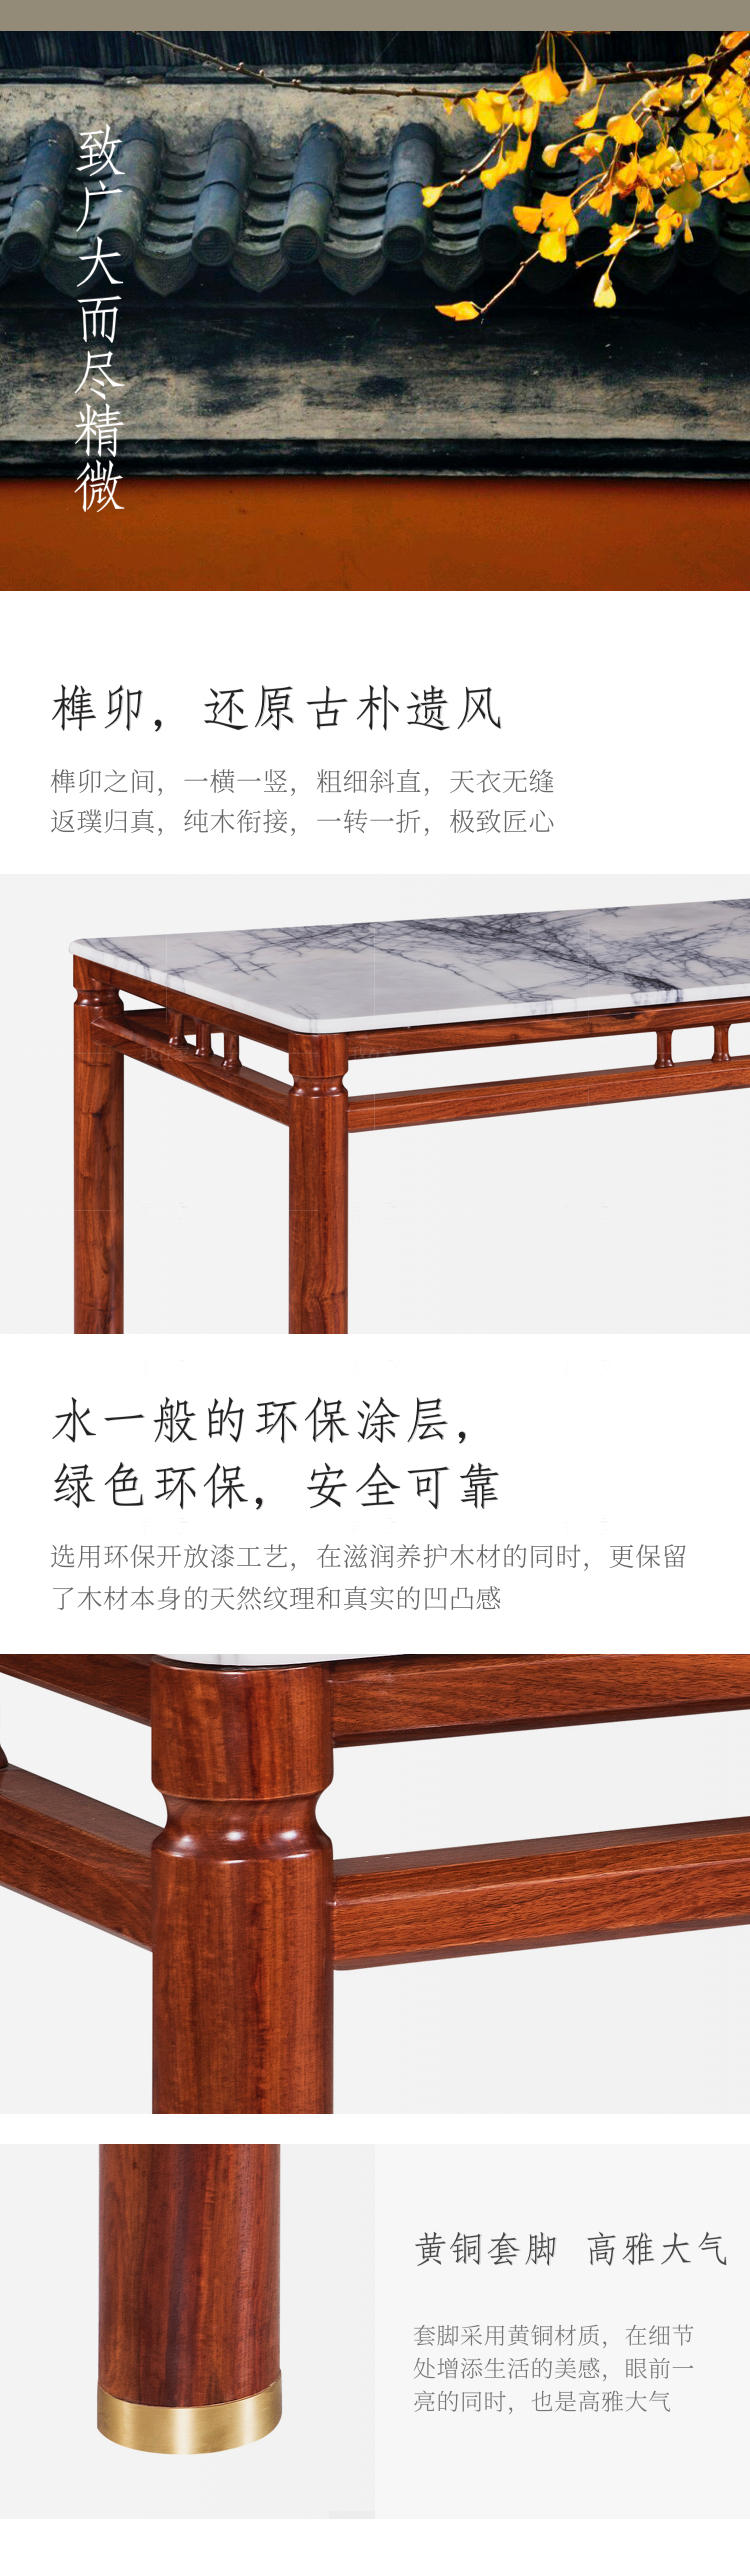 新古典中式风格独尊餐桌的家具详细介绍